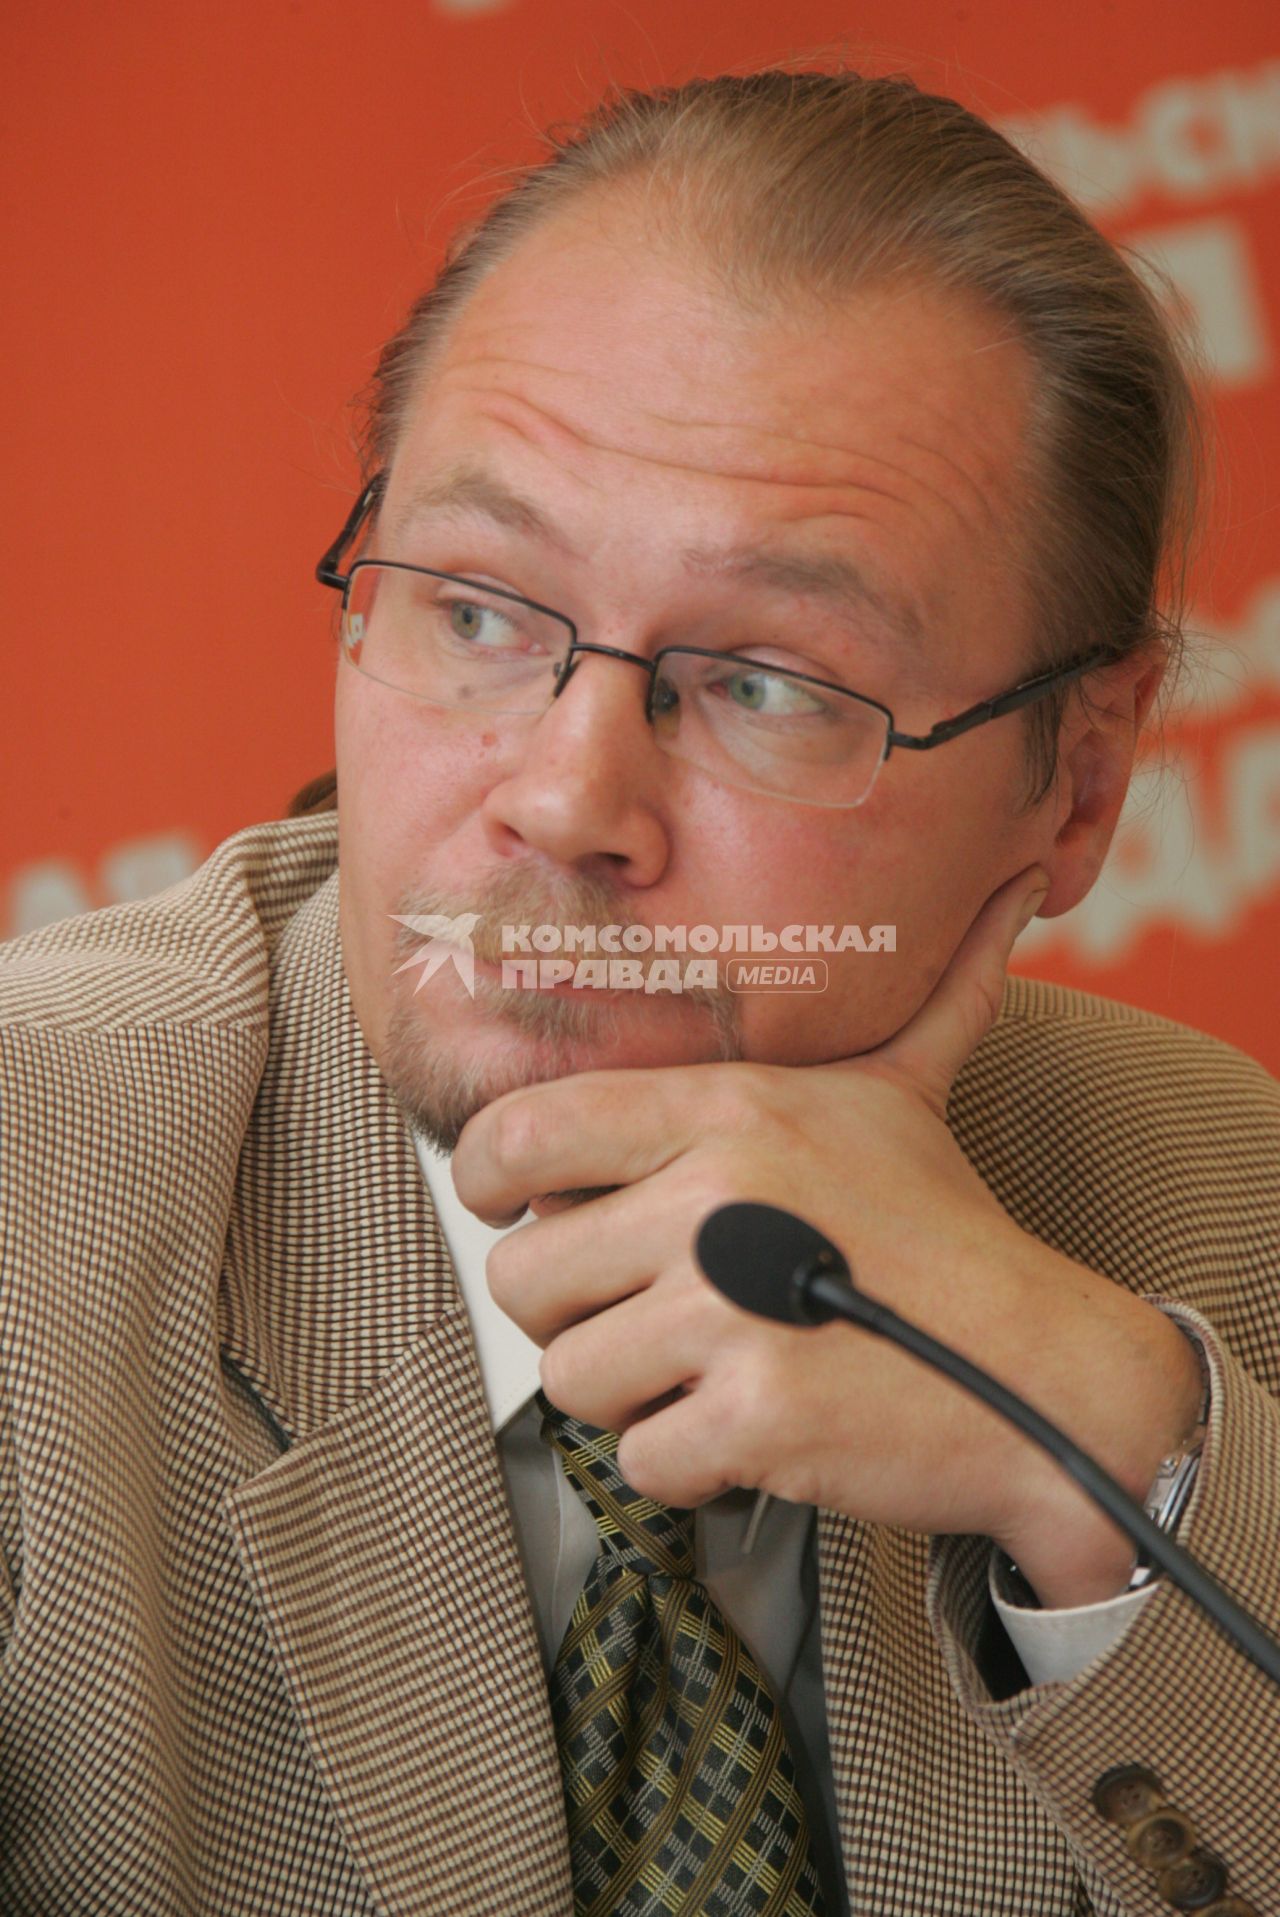 Ошевский Дмитрий Станиславович - детский психолог.. 28 октября 2011 года.